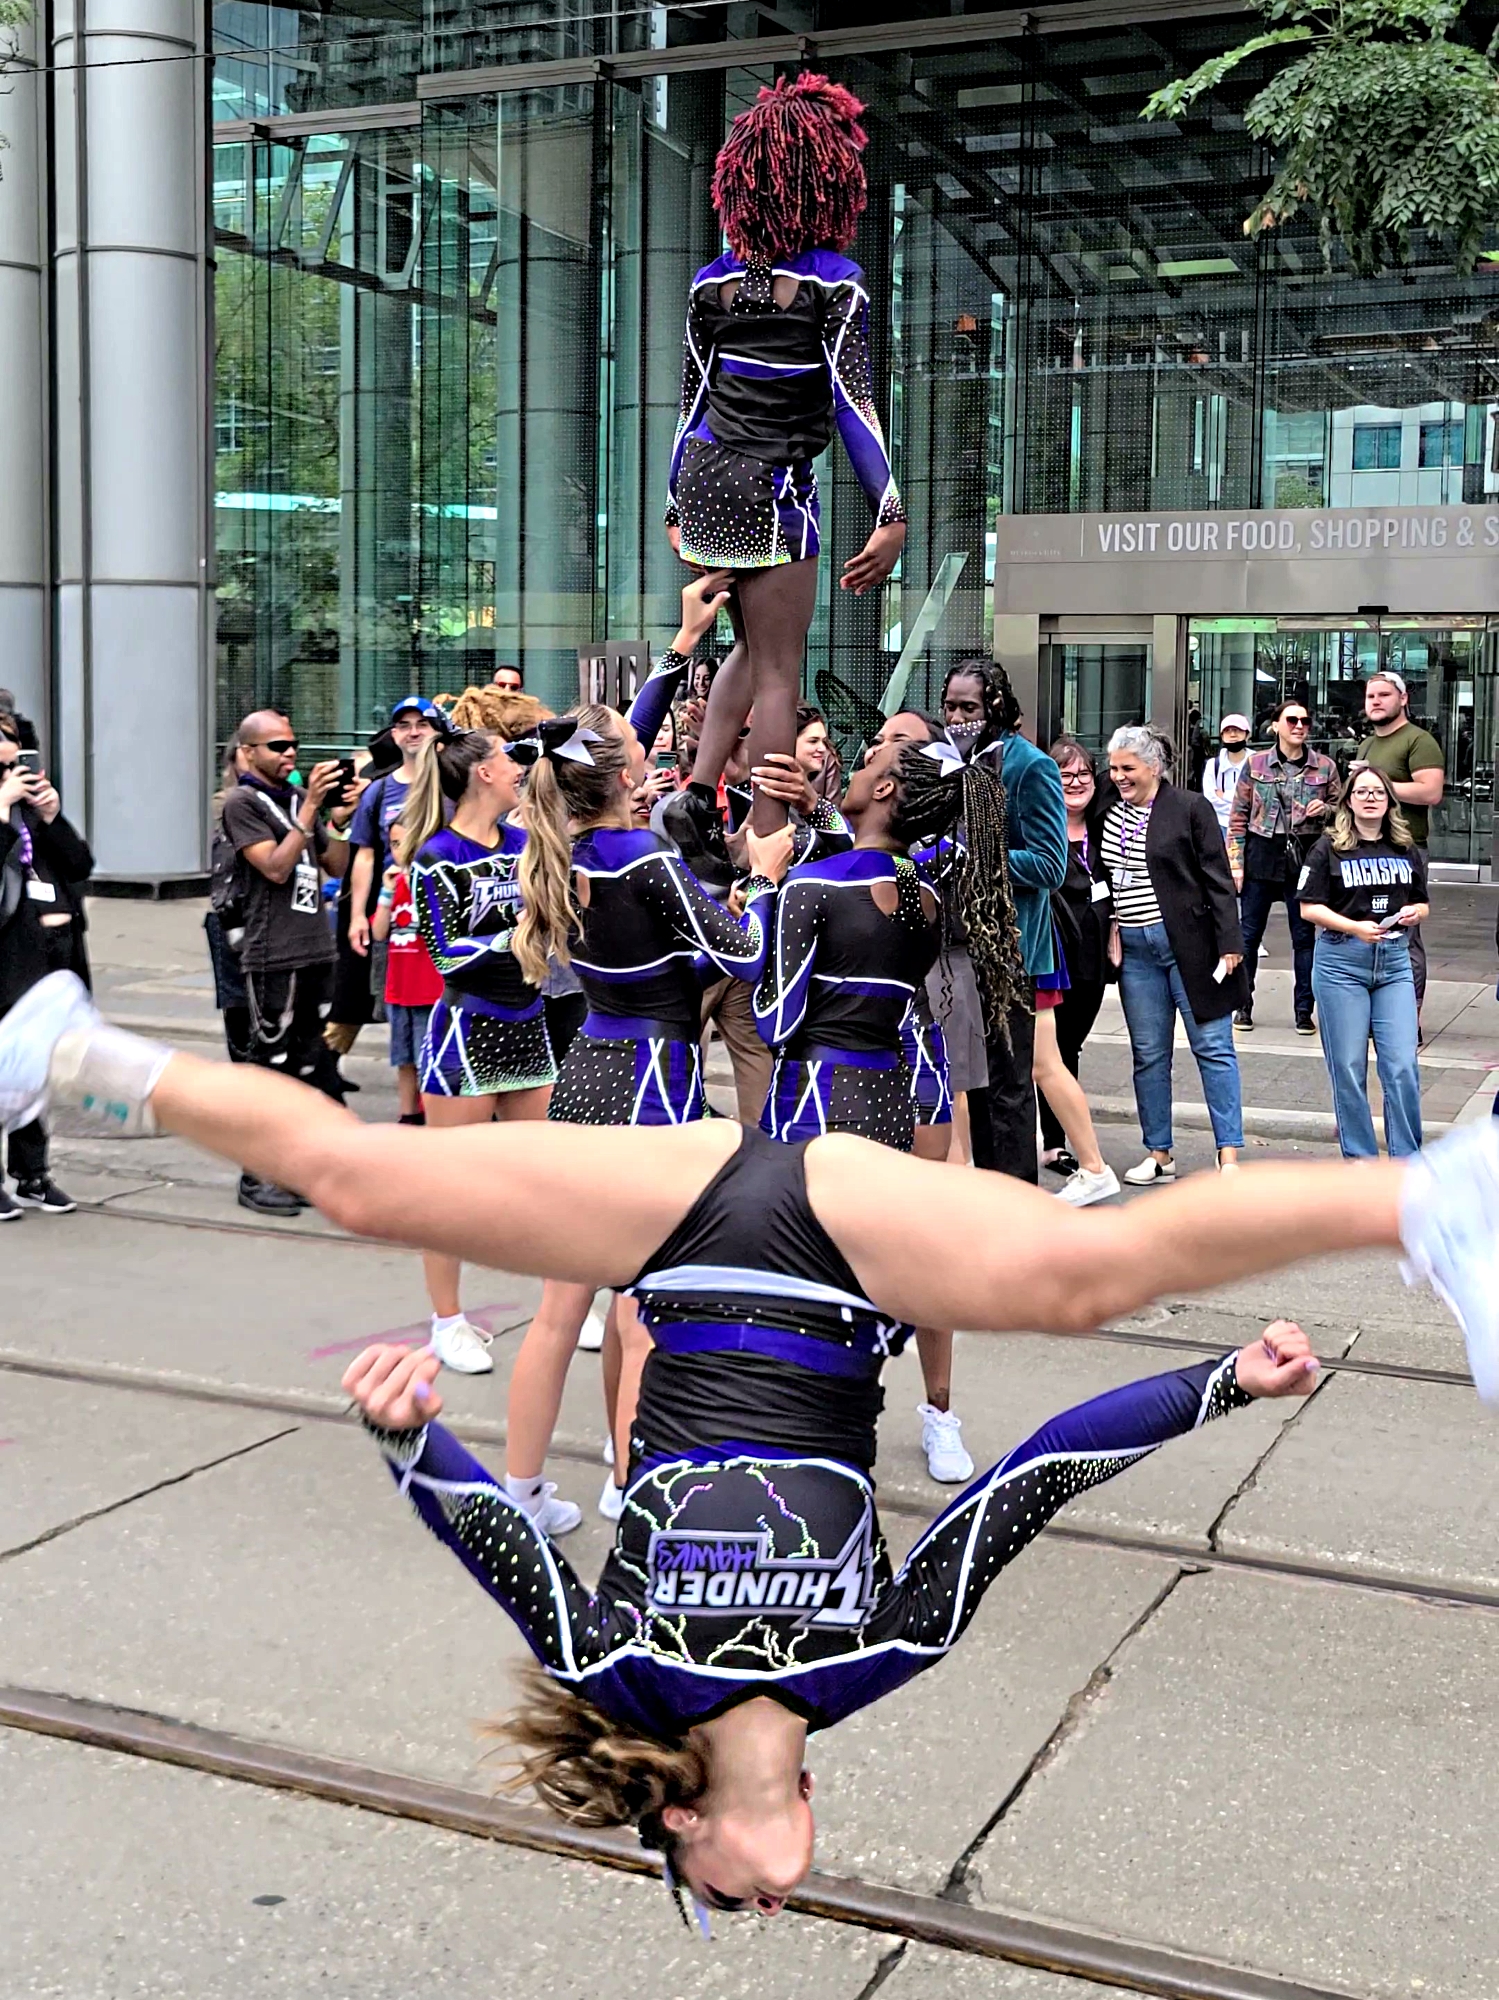 Cheerleader performing an upside down somersault split